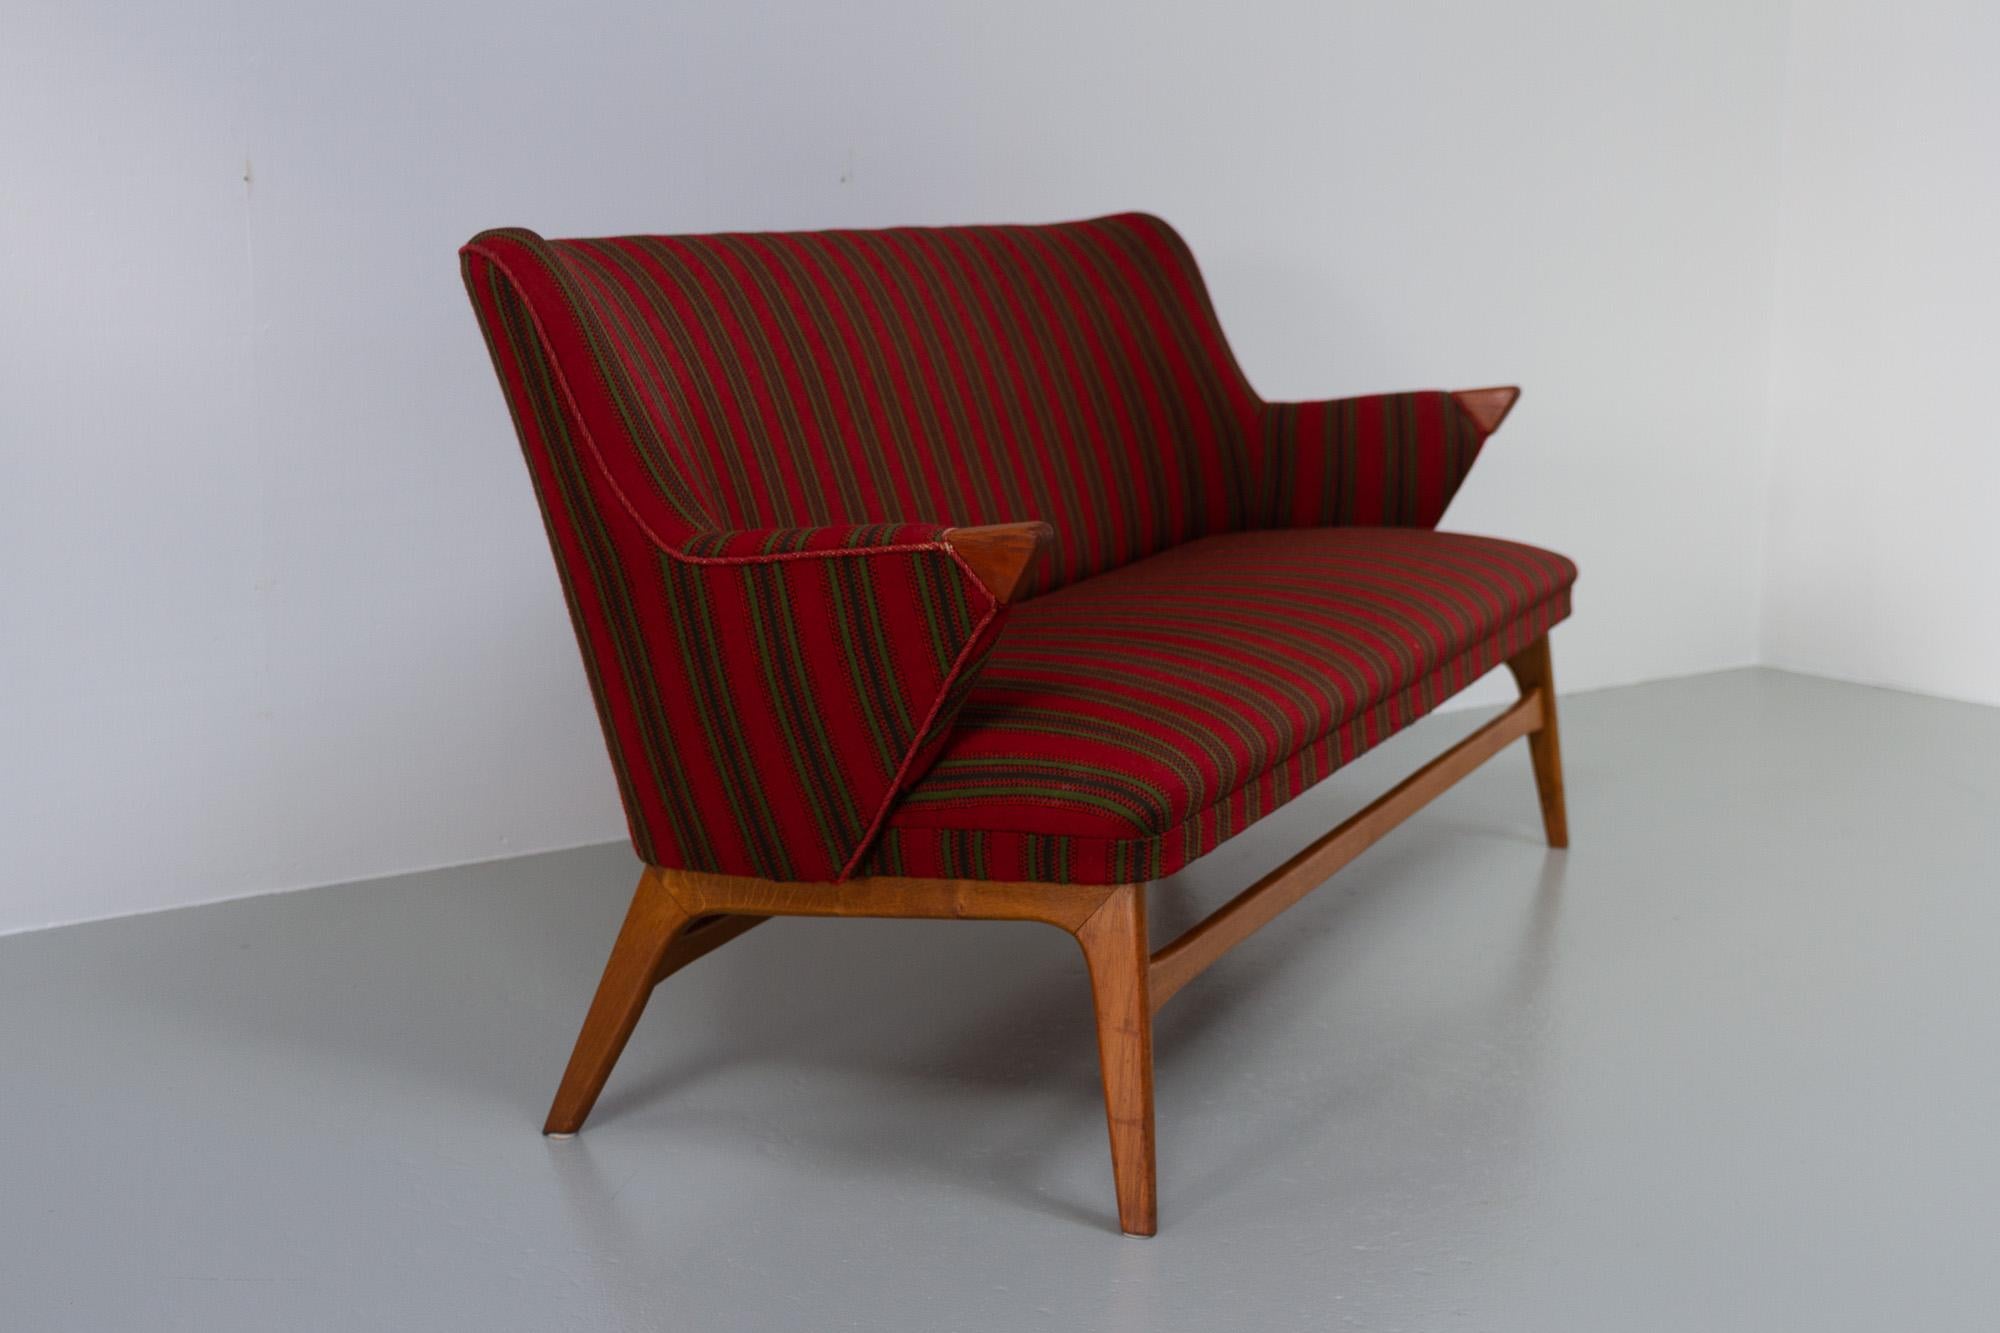 Dänisches Vintage-Sofa, 1950er-Jahre.
Organisch geformtes Mid-Century Modern Sofa, hergestellt von einem dänischen Tischlermeister in Dänemark in den 1940er oder 1950er Jahren. Gestreifte Wollpolsterung mit Teakholzdetails an den Armlehnen. Rahmen